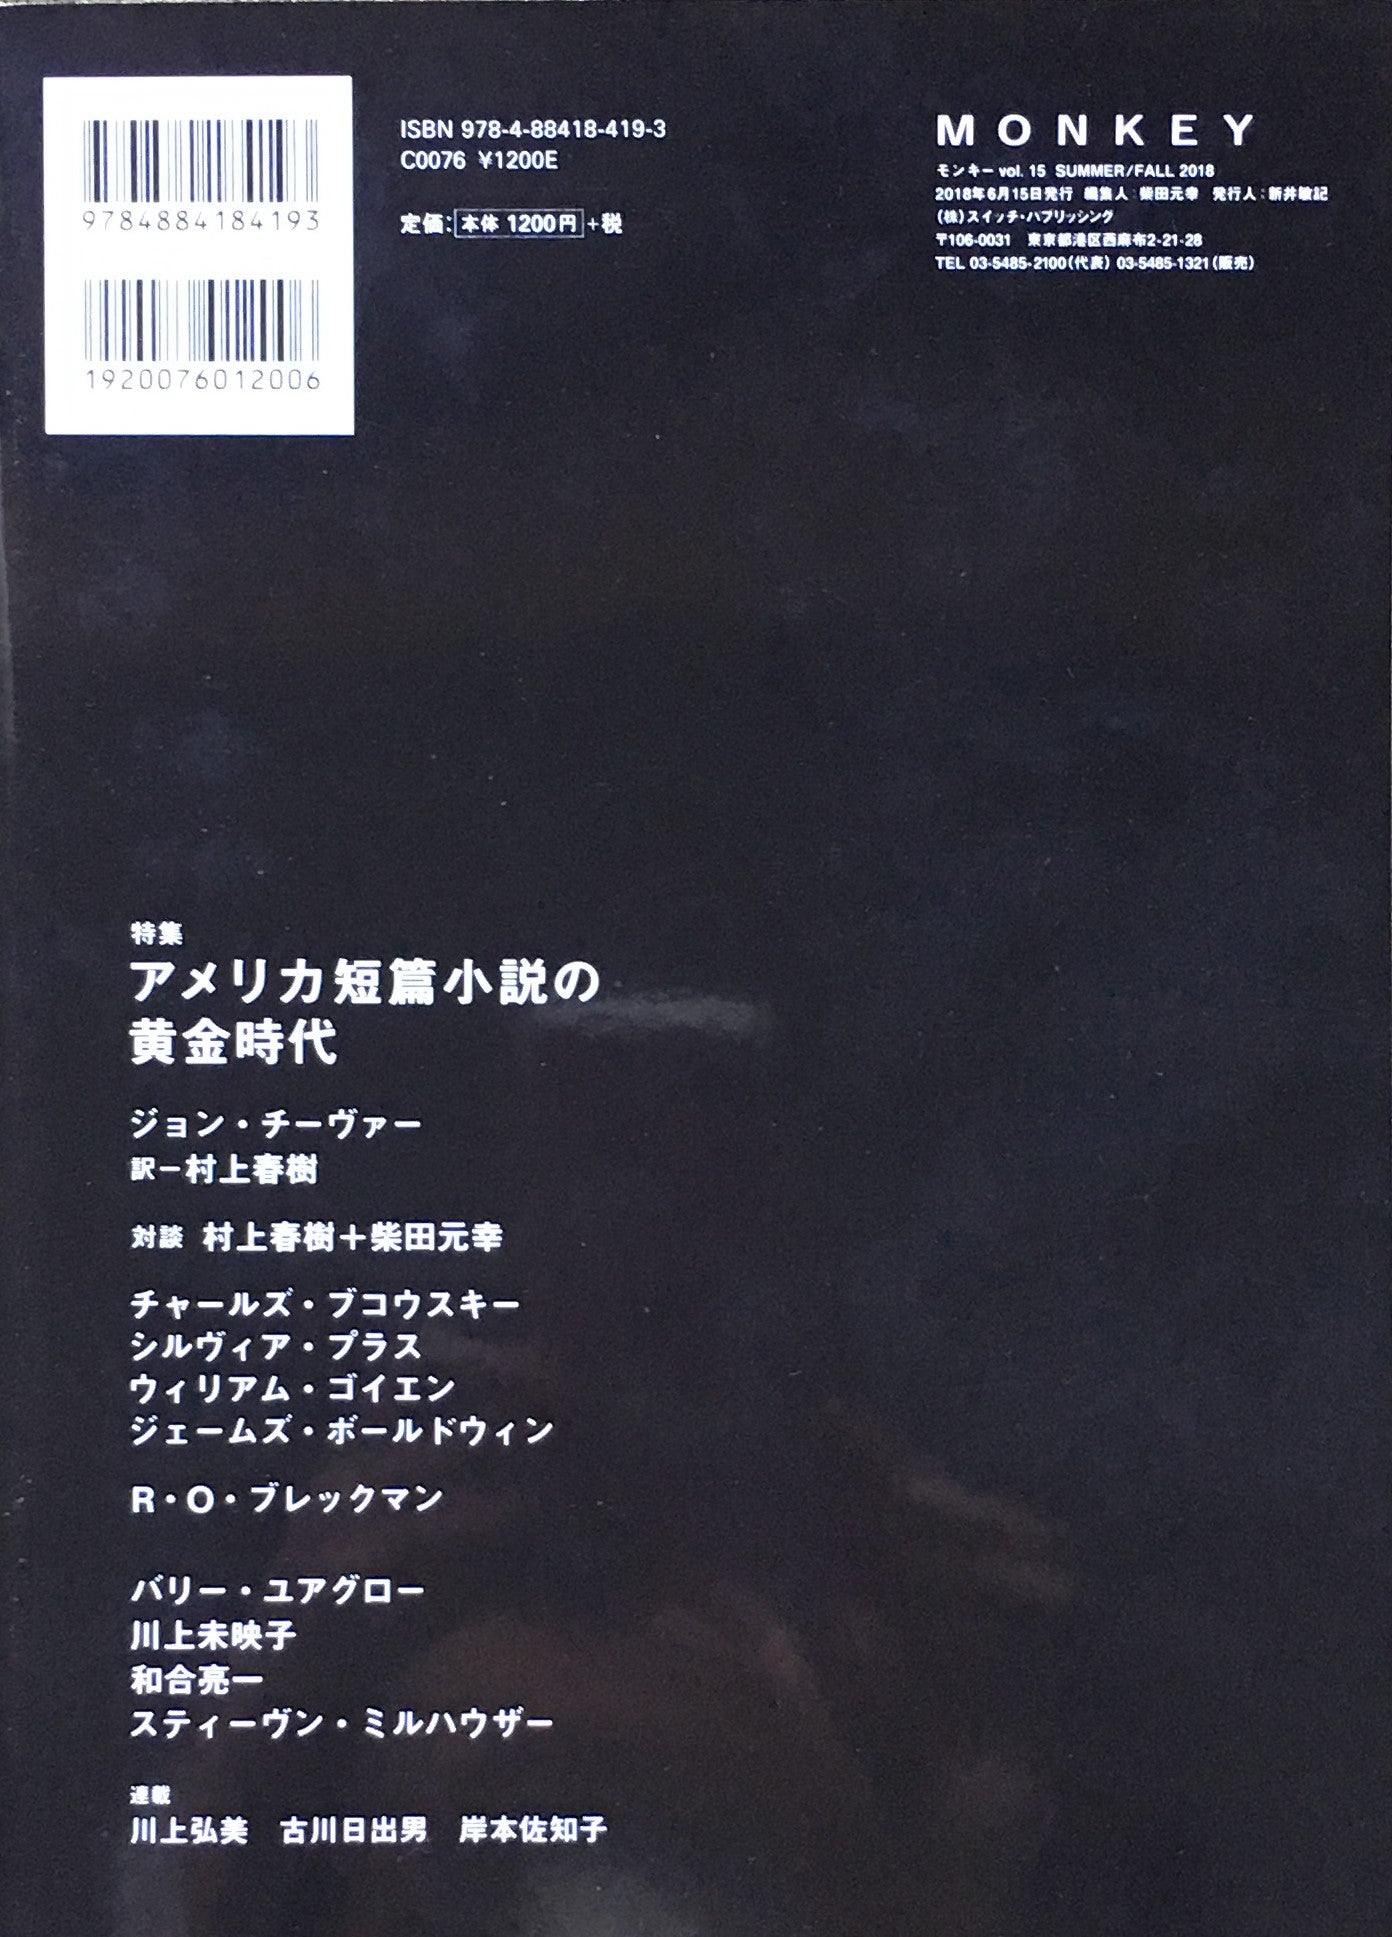 モンキー　vol.15 summer/fall 2018 柴田元幸責任編集